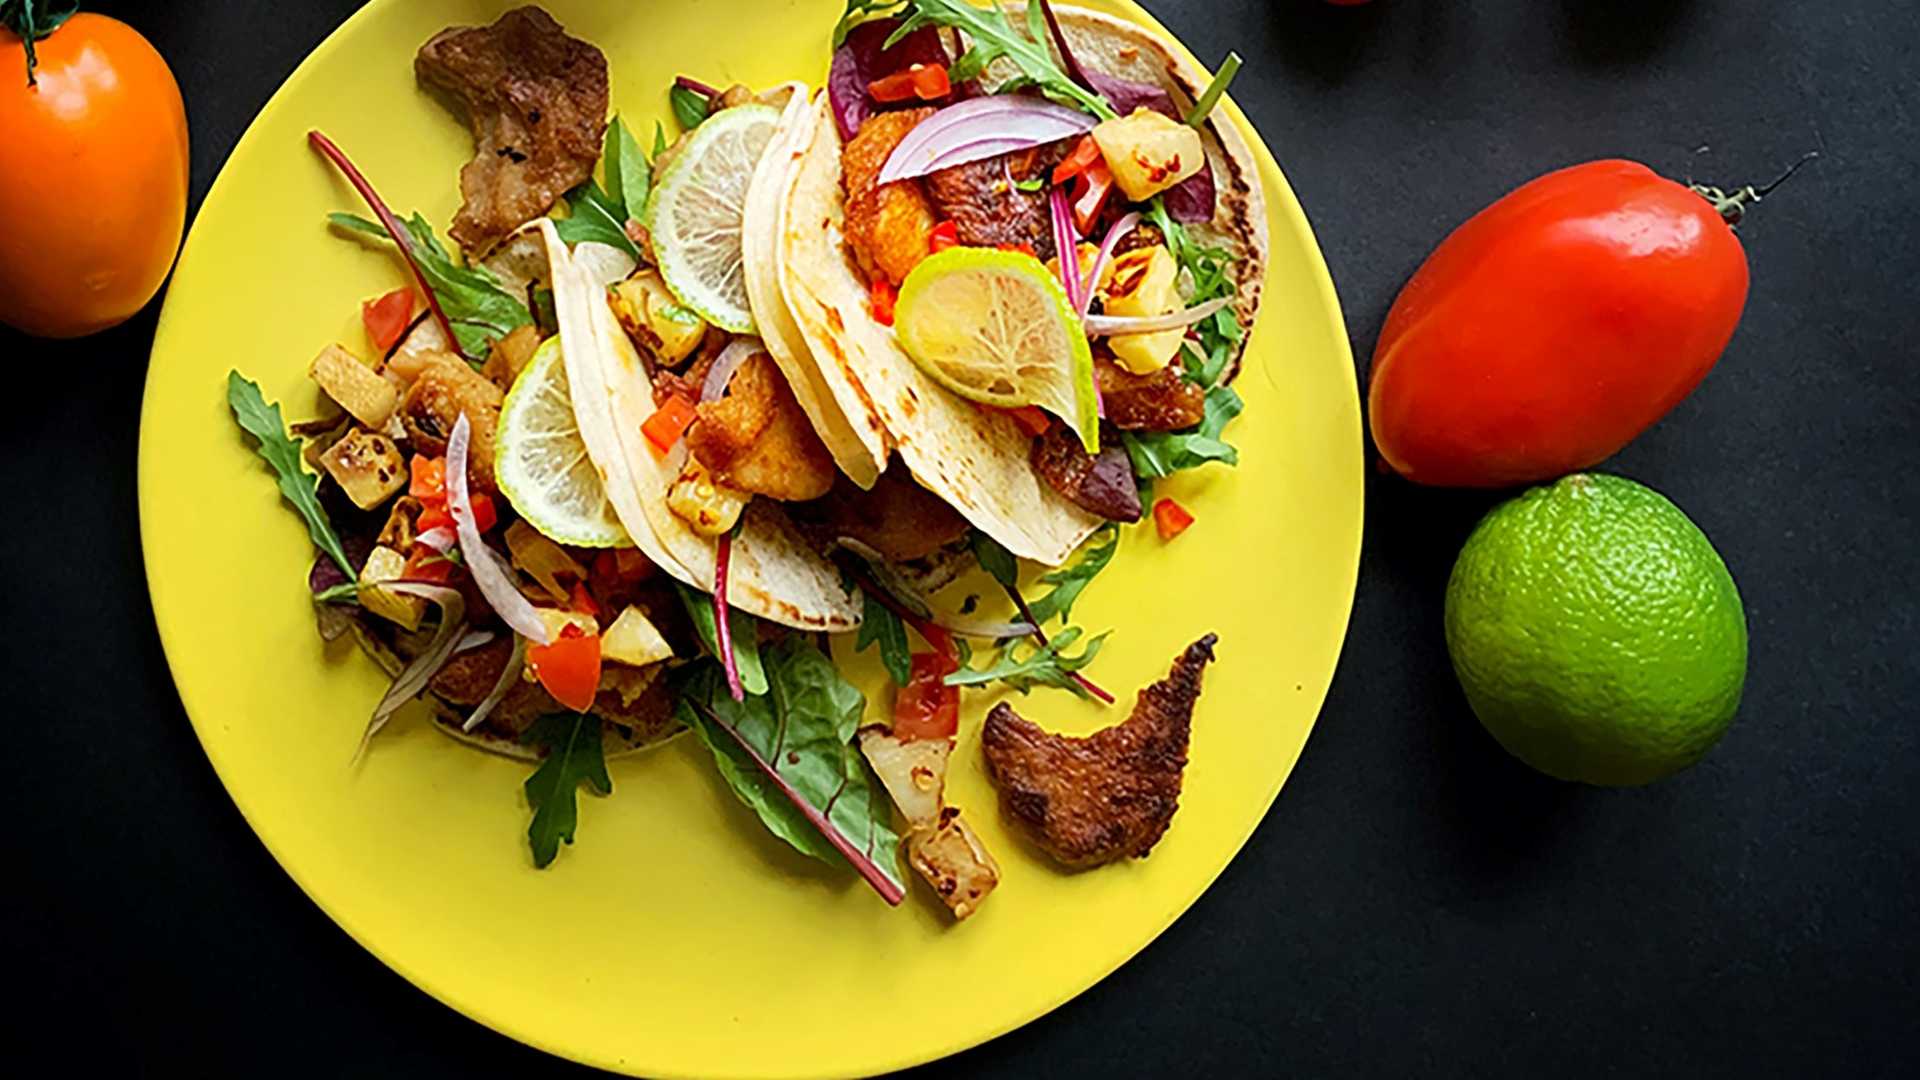 Kuvassa on keltainen lautanen, jonka päällä on kasviksilla ja kasviproteiinilla täytettyjä pieniä, rullaamattomia tortillalettuja. Lautasen vieressä on punainen ja oranssi tomaatti sekä lime.